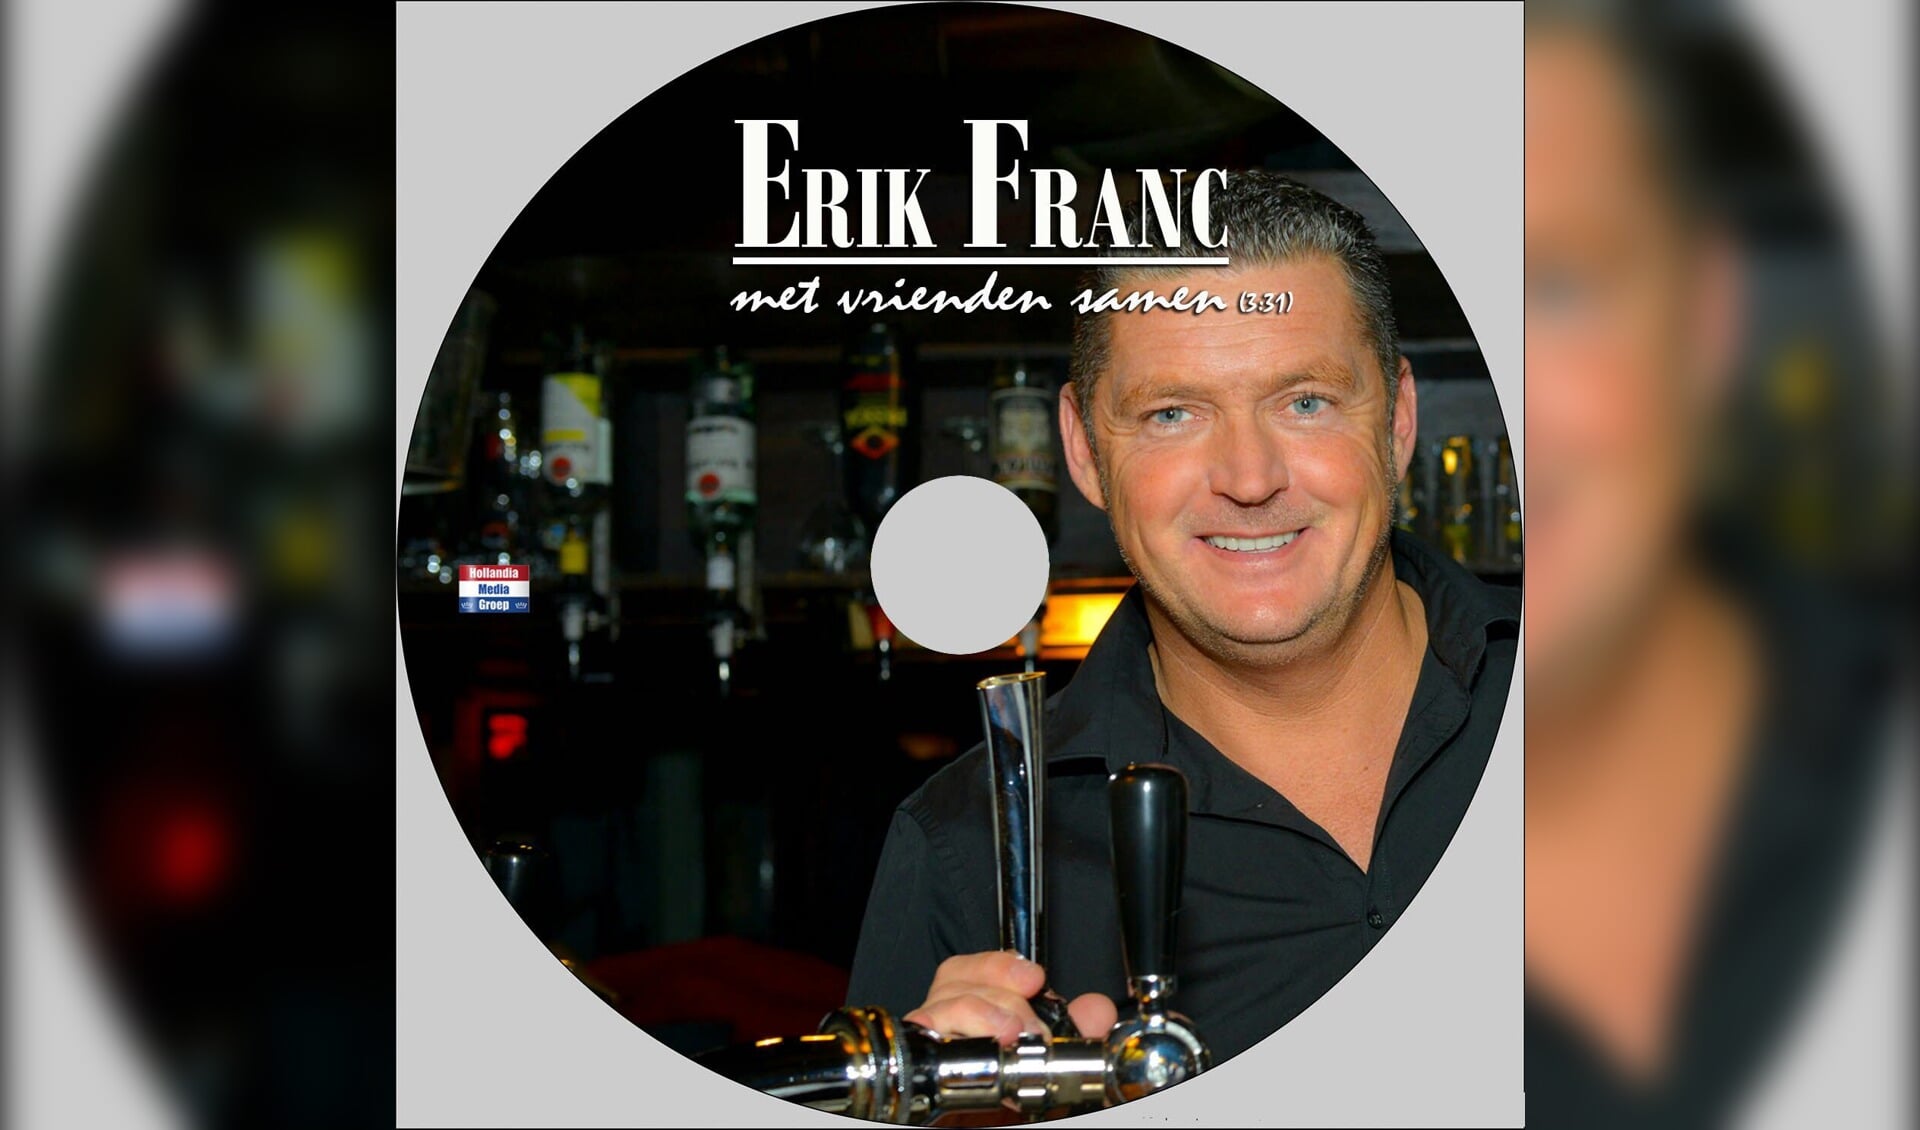 Erik Franc, afgebeeld op zijn eigen cd.